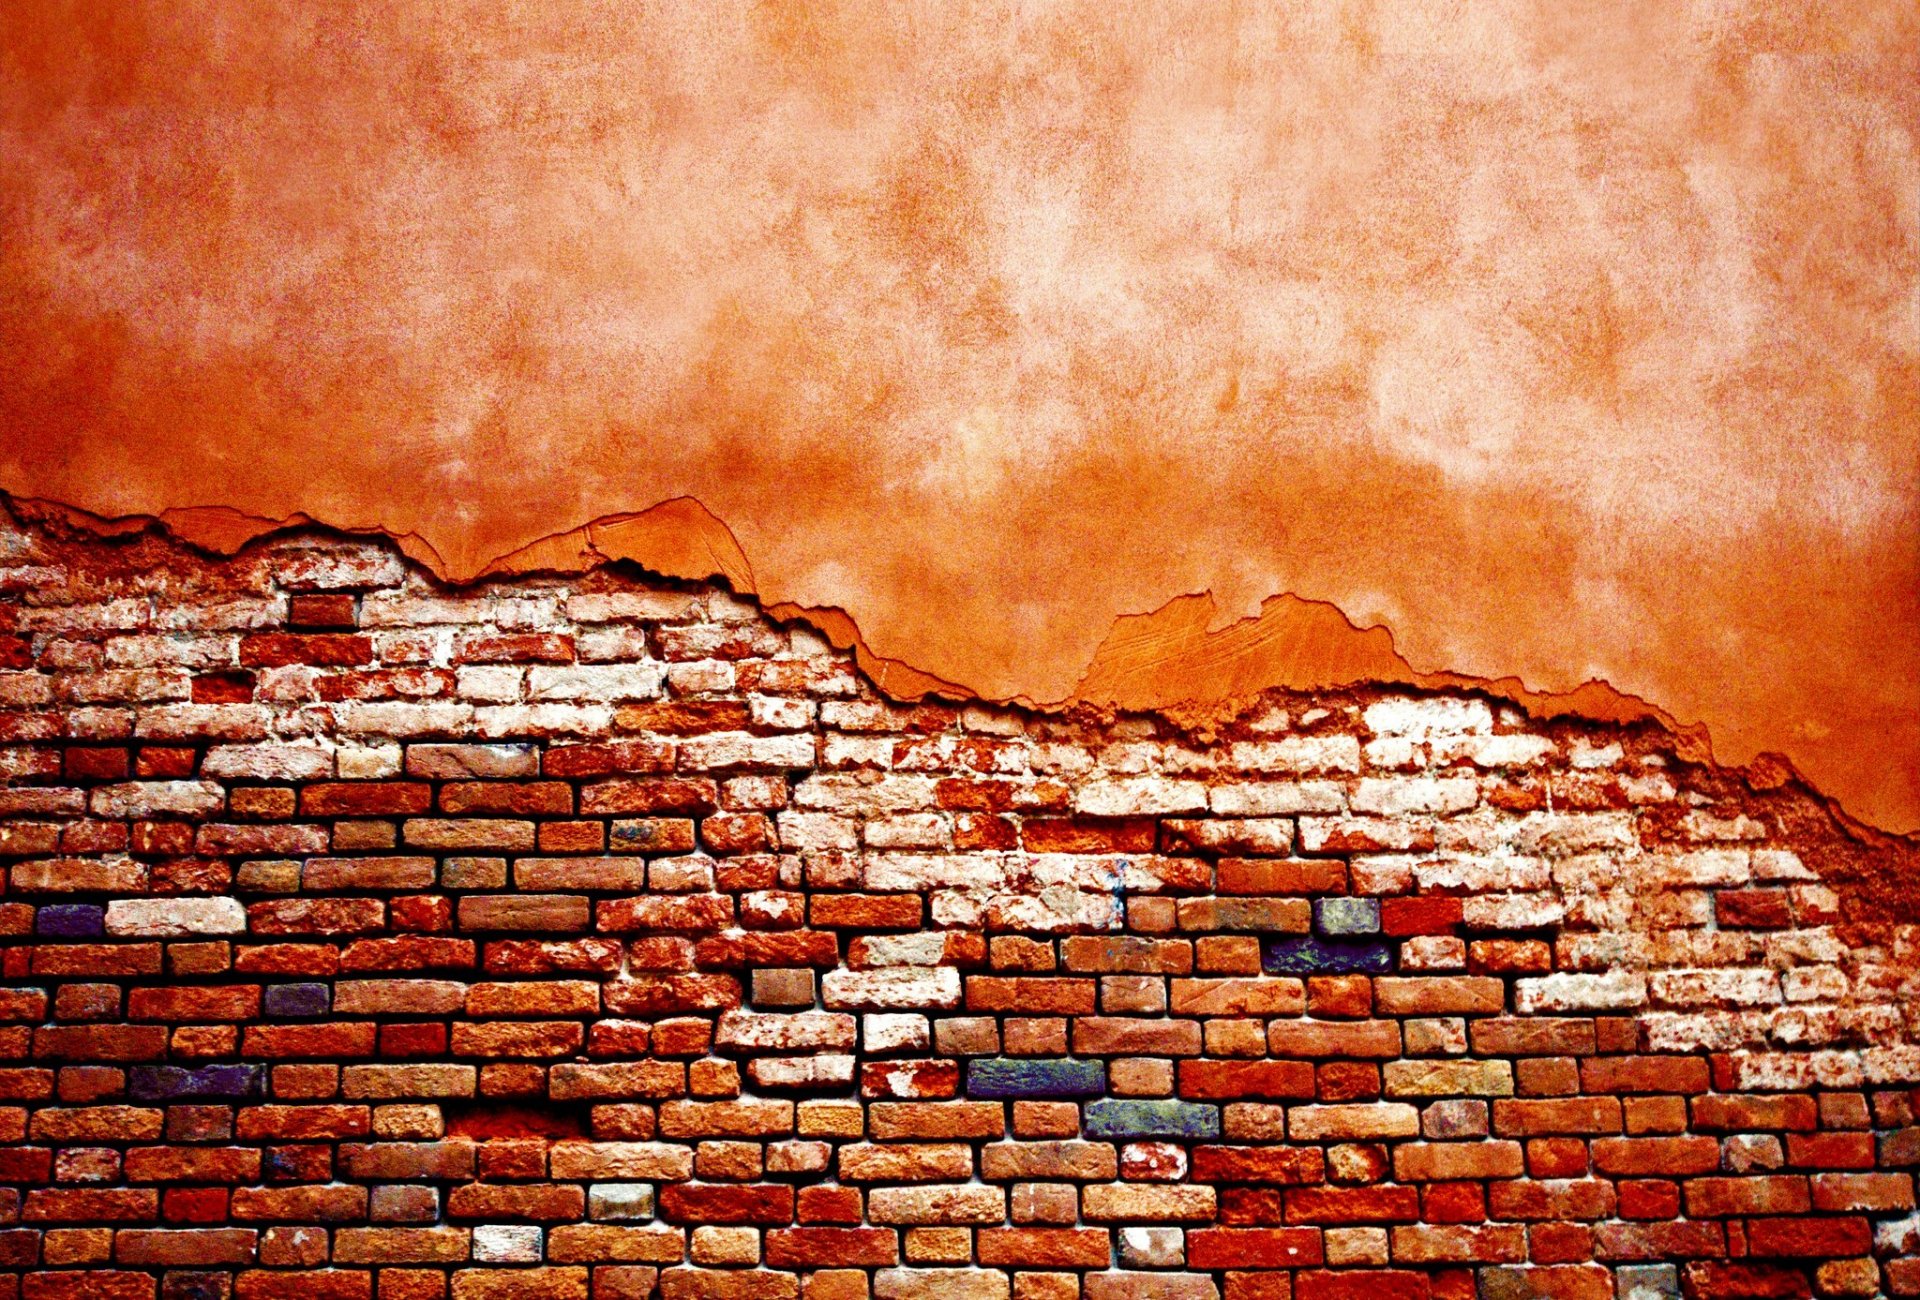 el papel pintado de la pared,enladrillado,ladrillo,pared,rojo,naranja